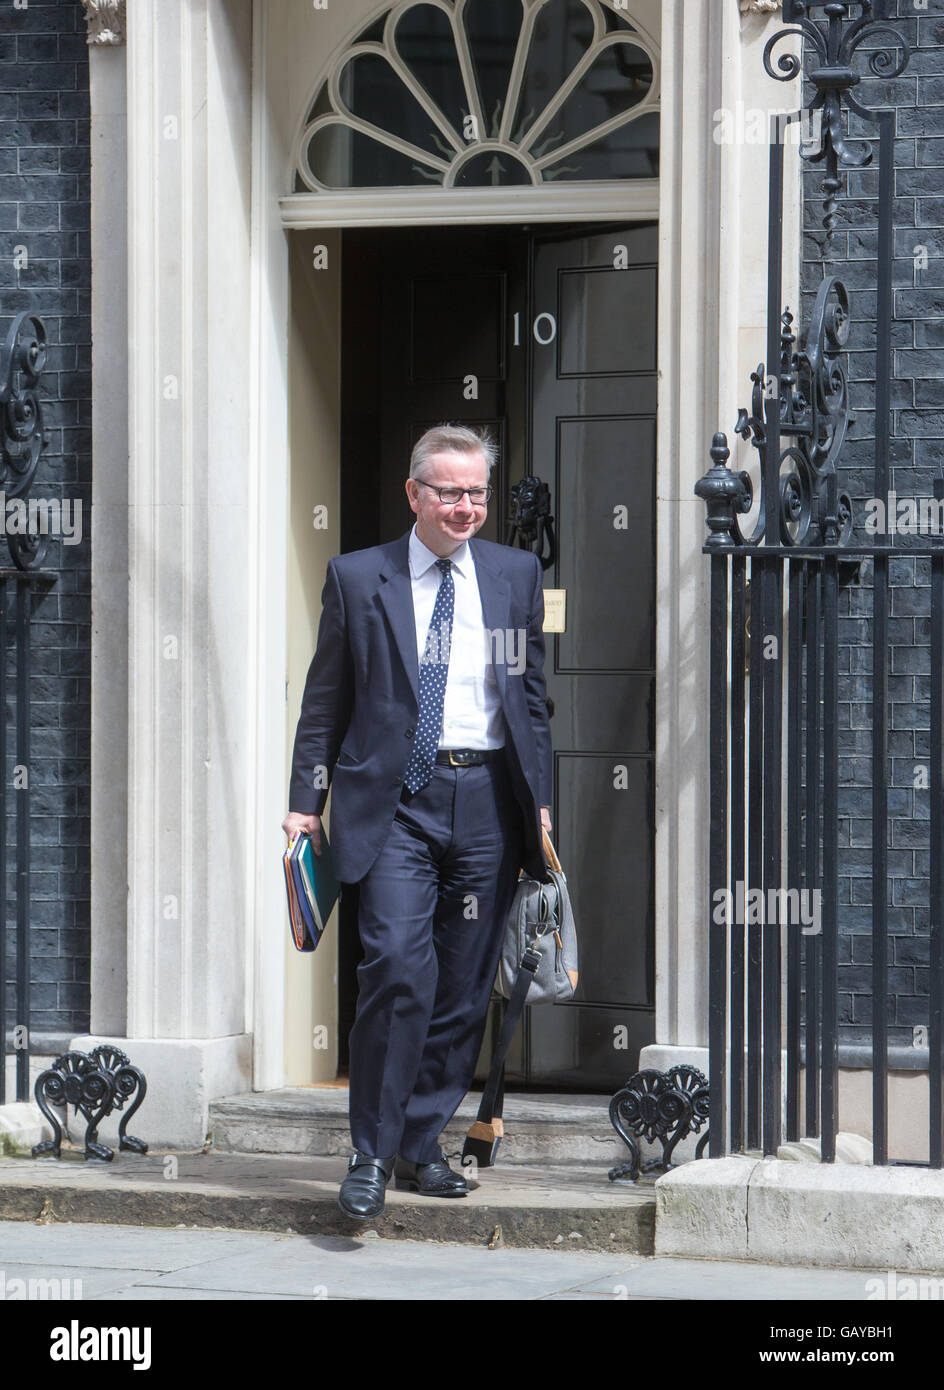 Secretario de Justicia,Michael Gove,dejando a Downing Street tras una reunión del gabinete.votó a abandonar la UE Foto de stock